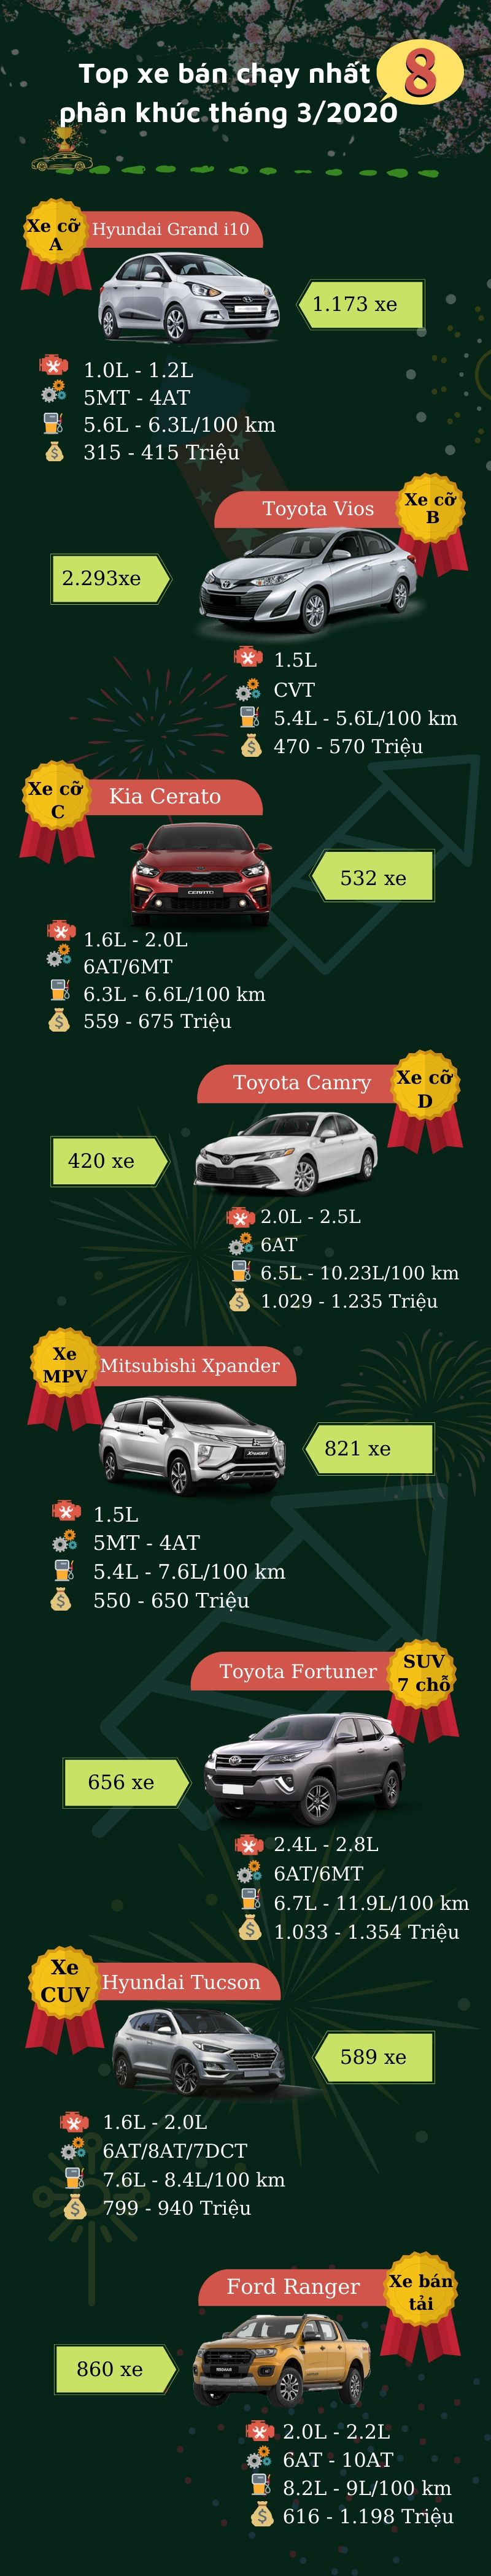 [Infographic] Các mẫu xe ô tô đứng đầu 8 phân khúc tại thị trường Việt tháng 3/2020.